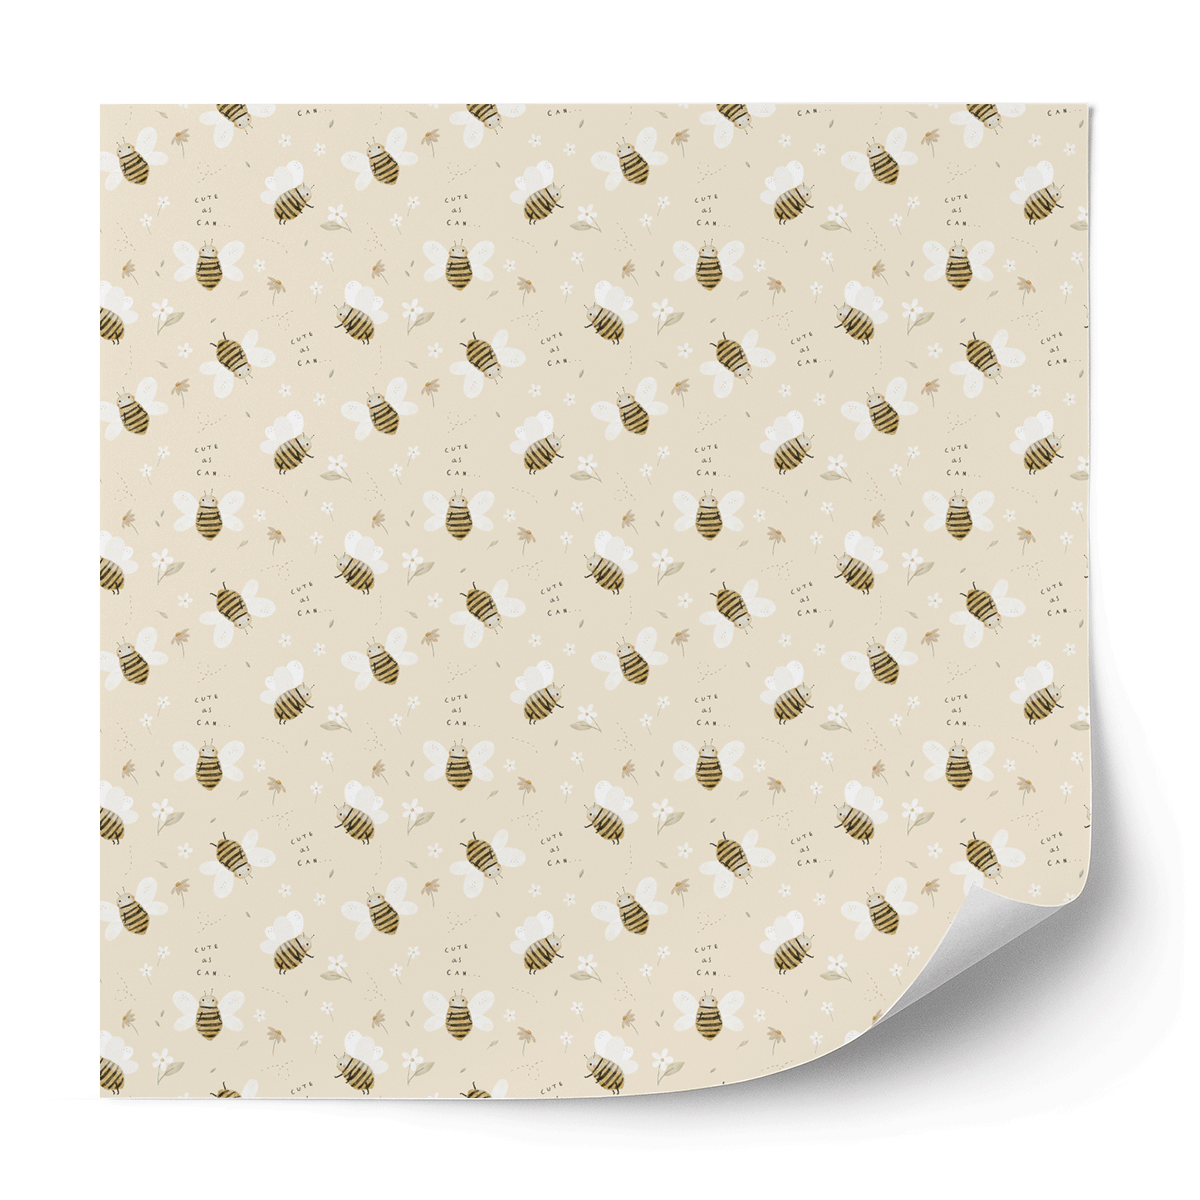 Furniture wrap - Honey bees (cream)